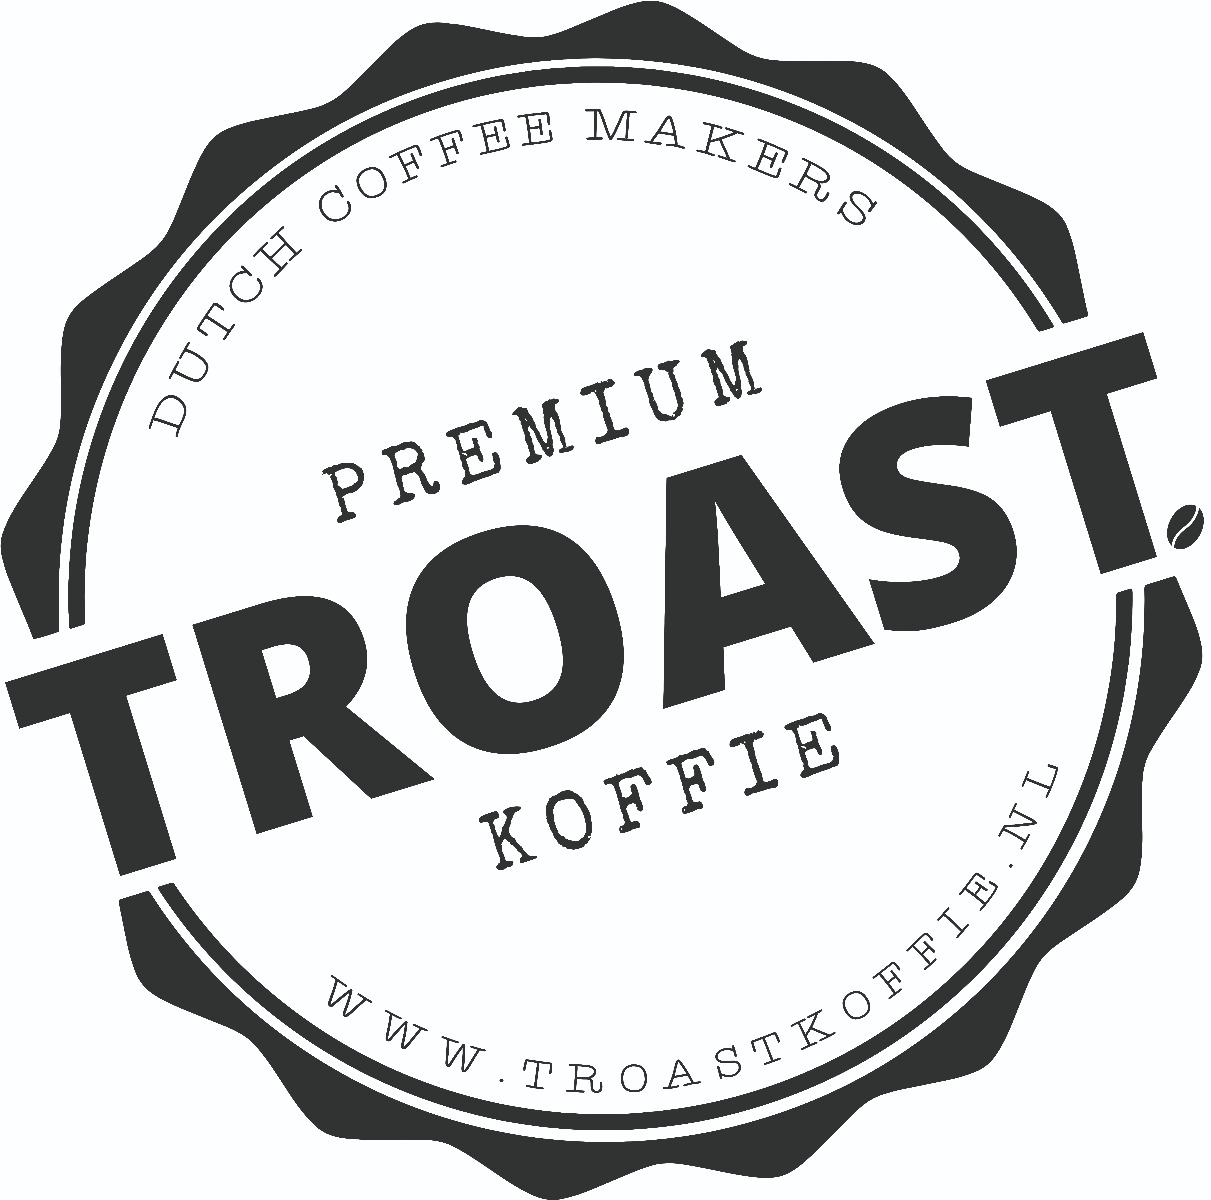 TROAST. logo